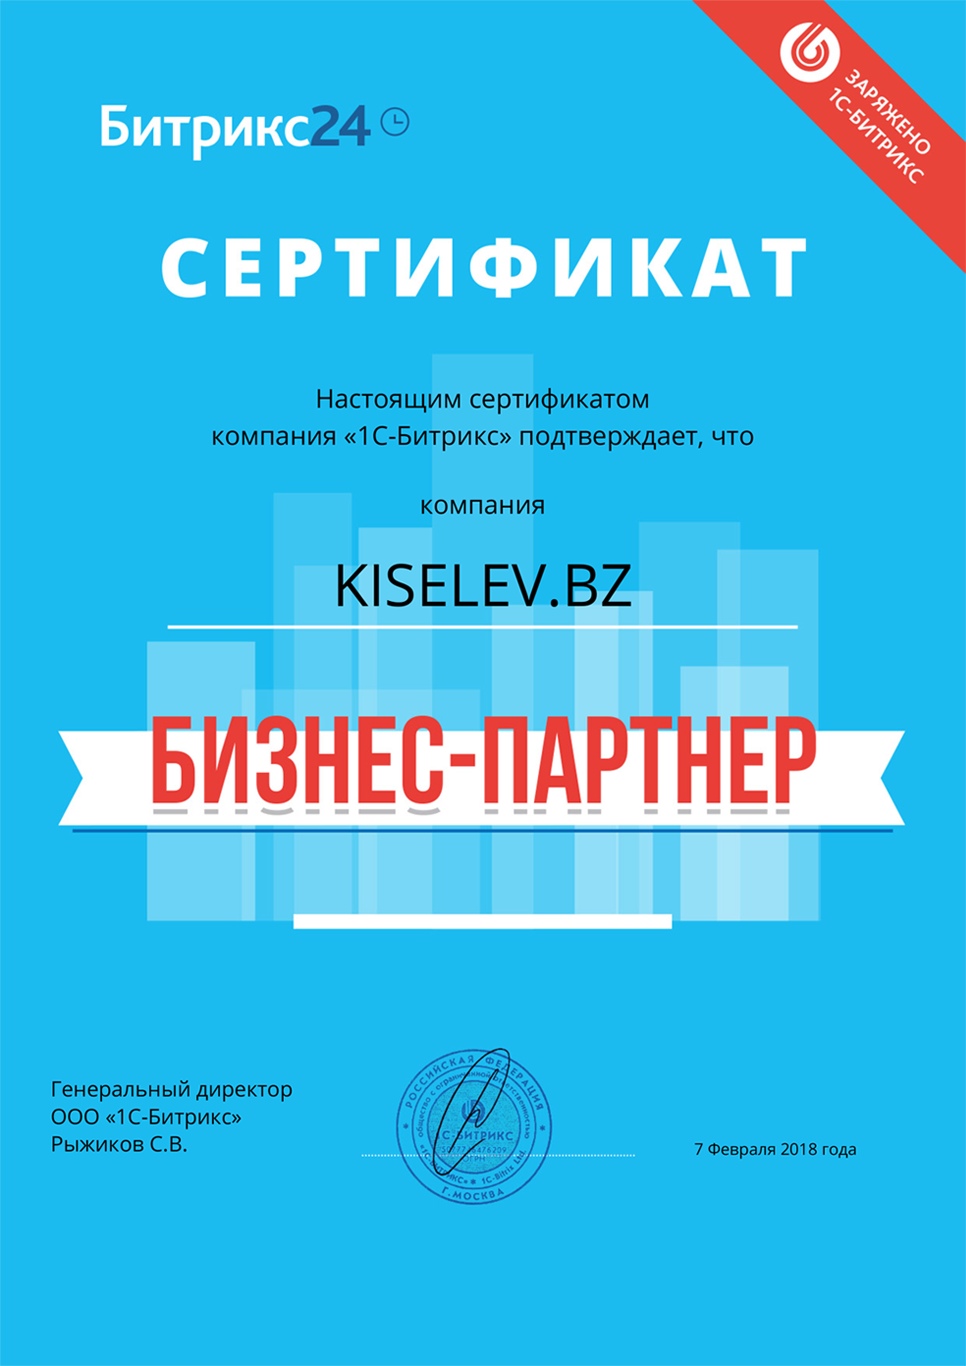 Сертификат партнёра по АМОСРМ в Верхнем Уфалее